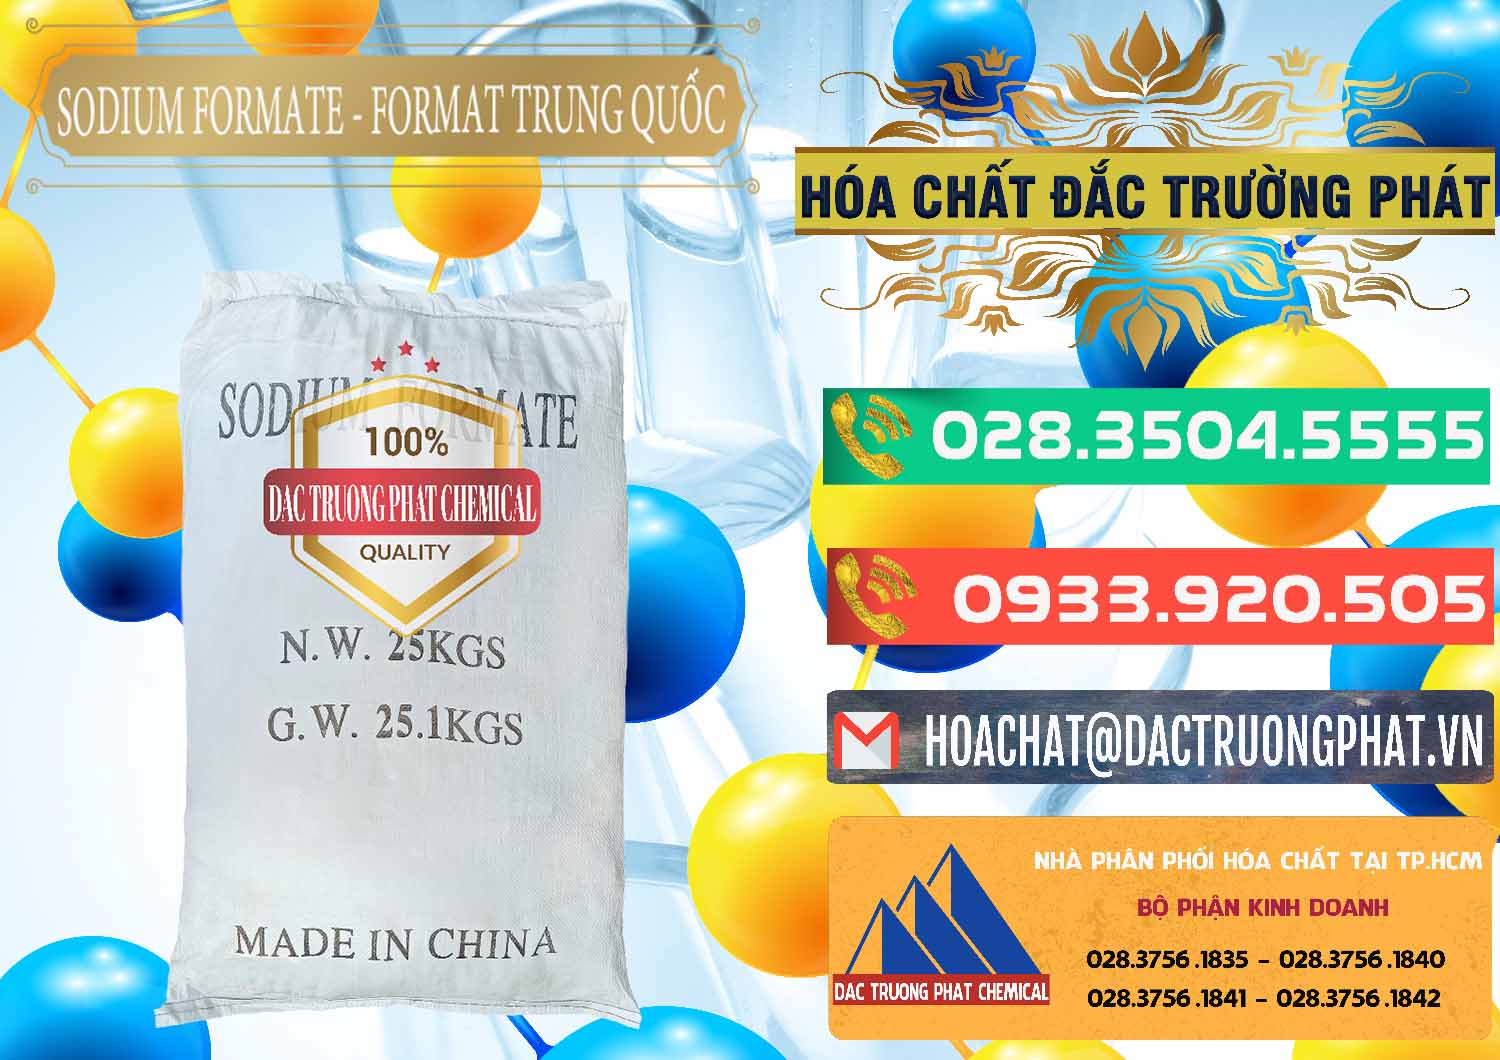 Cty chuyên bán và cung cấp Sodium Formate - Natri Format Trung Quốc China - 0142 - Nhà phân phối & nhập khẩu hóa chất tại TP.HCM - congtyhoachat.com.vn